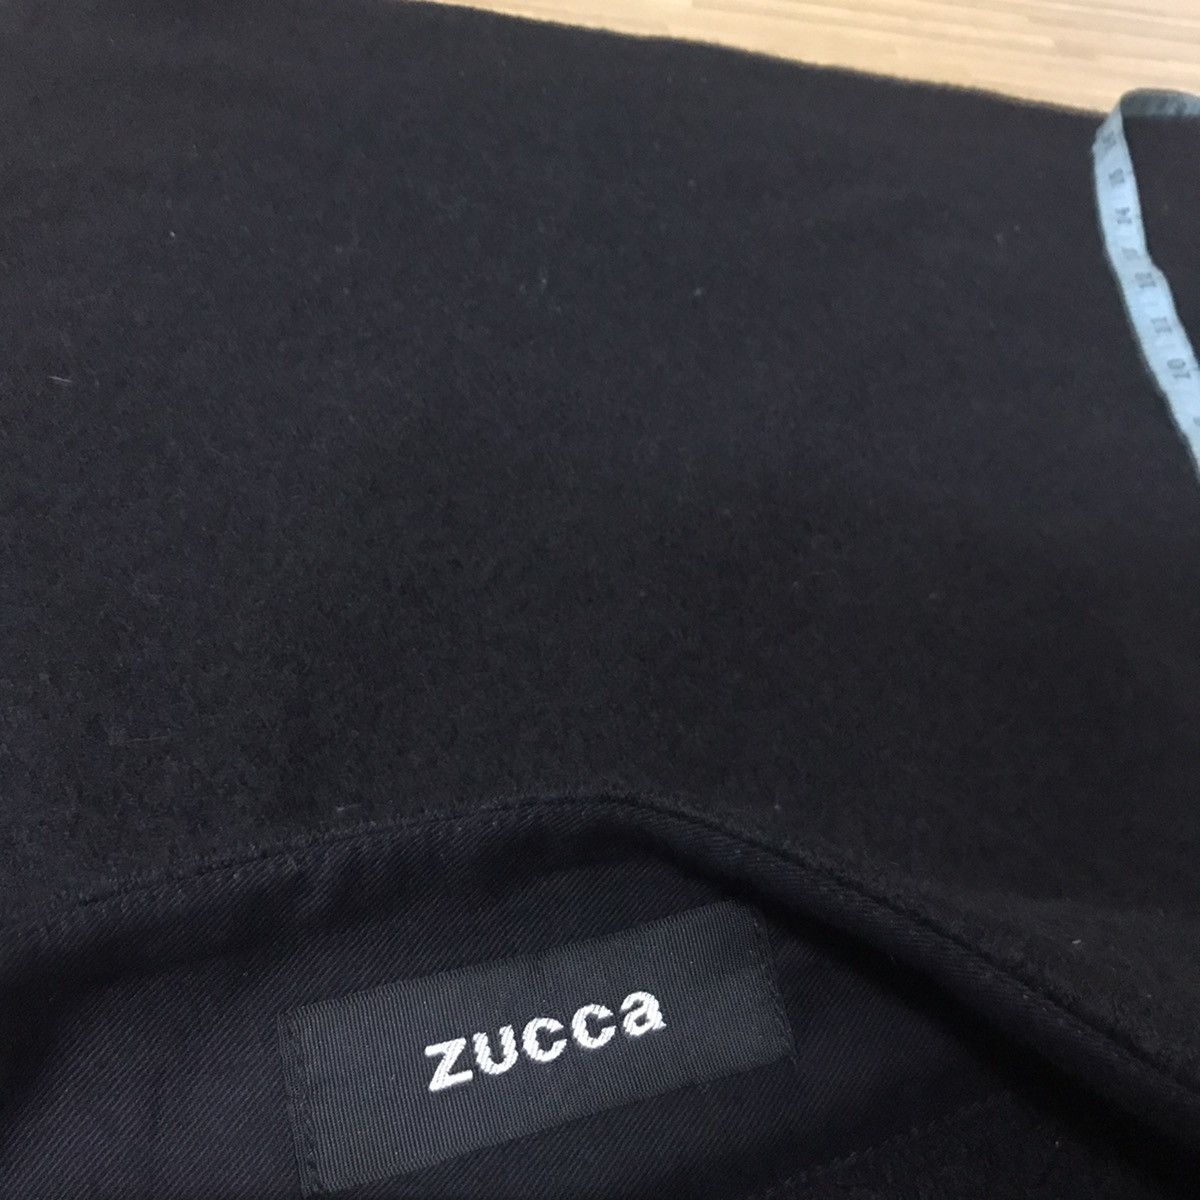 Zucca issey miyake black wool skirt - 6